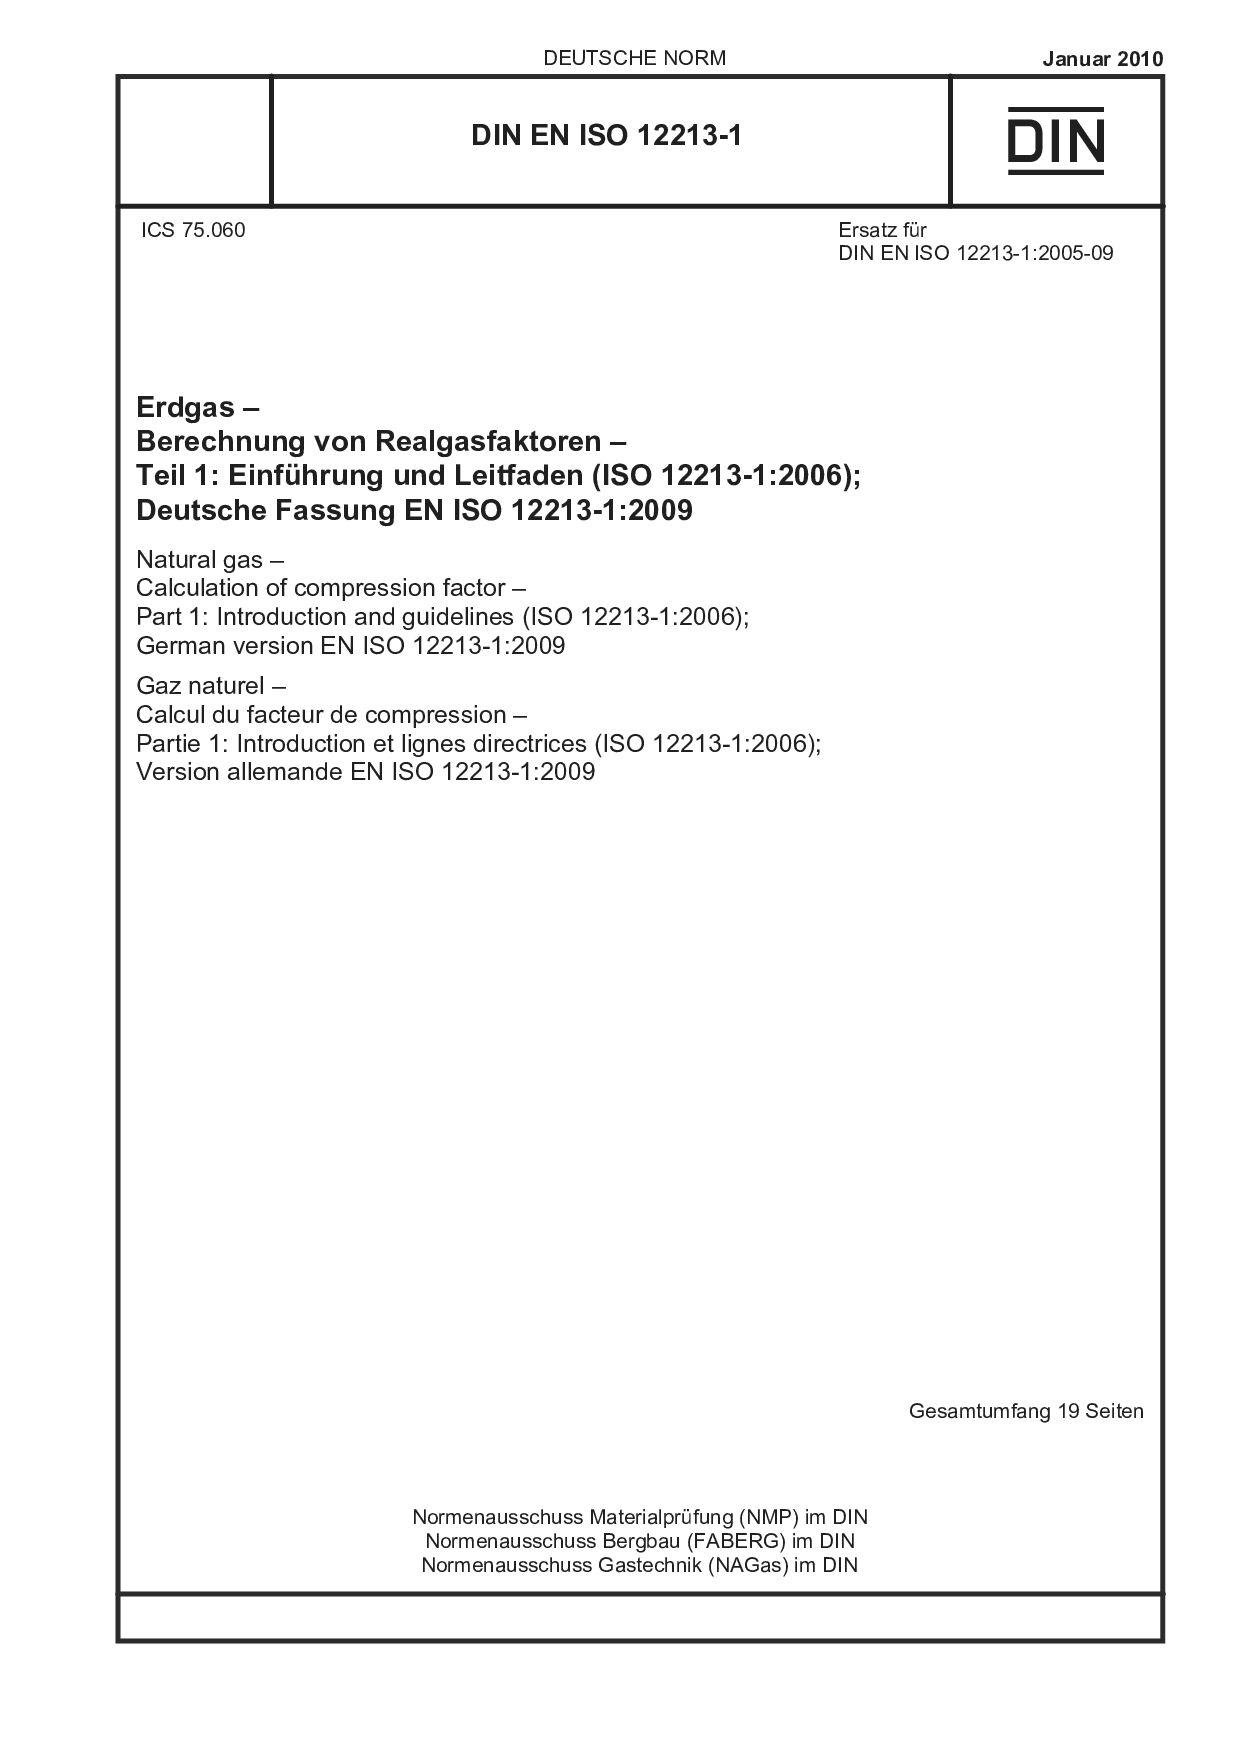 DIN EN ISO 12213-1:2010